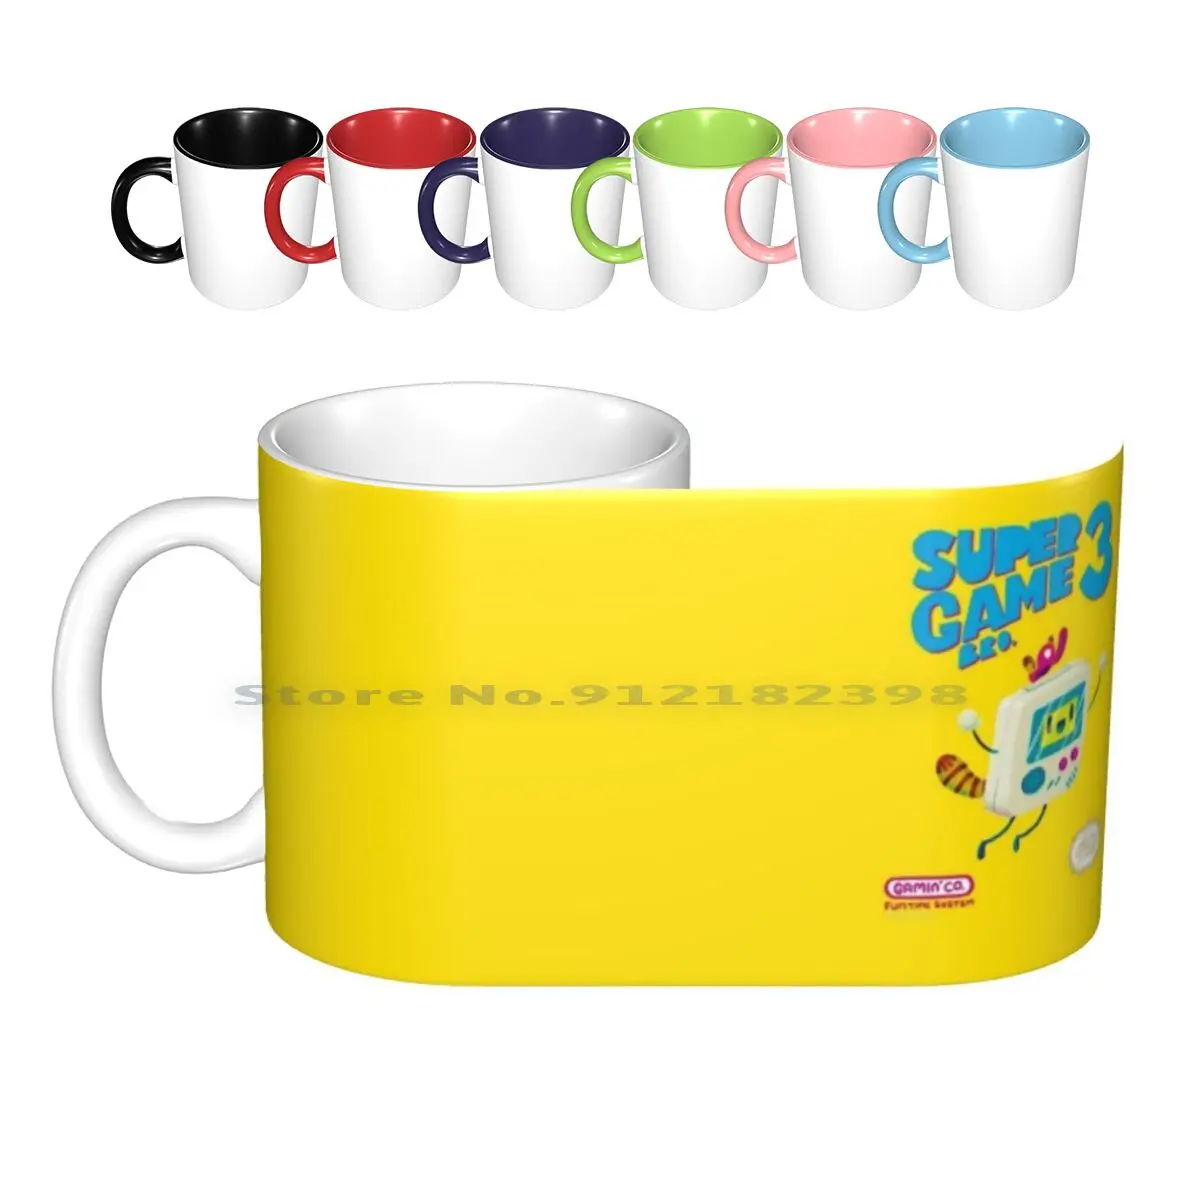 

Super Game Bro 3 Ceramic Mugs Coffee Cups Milk Tea Mug Gameboy Super Bros Super Bros 3 Gameboy Gaming Retro Gaming Retro Gaming